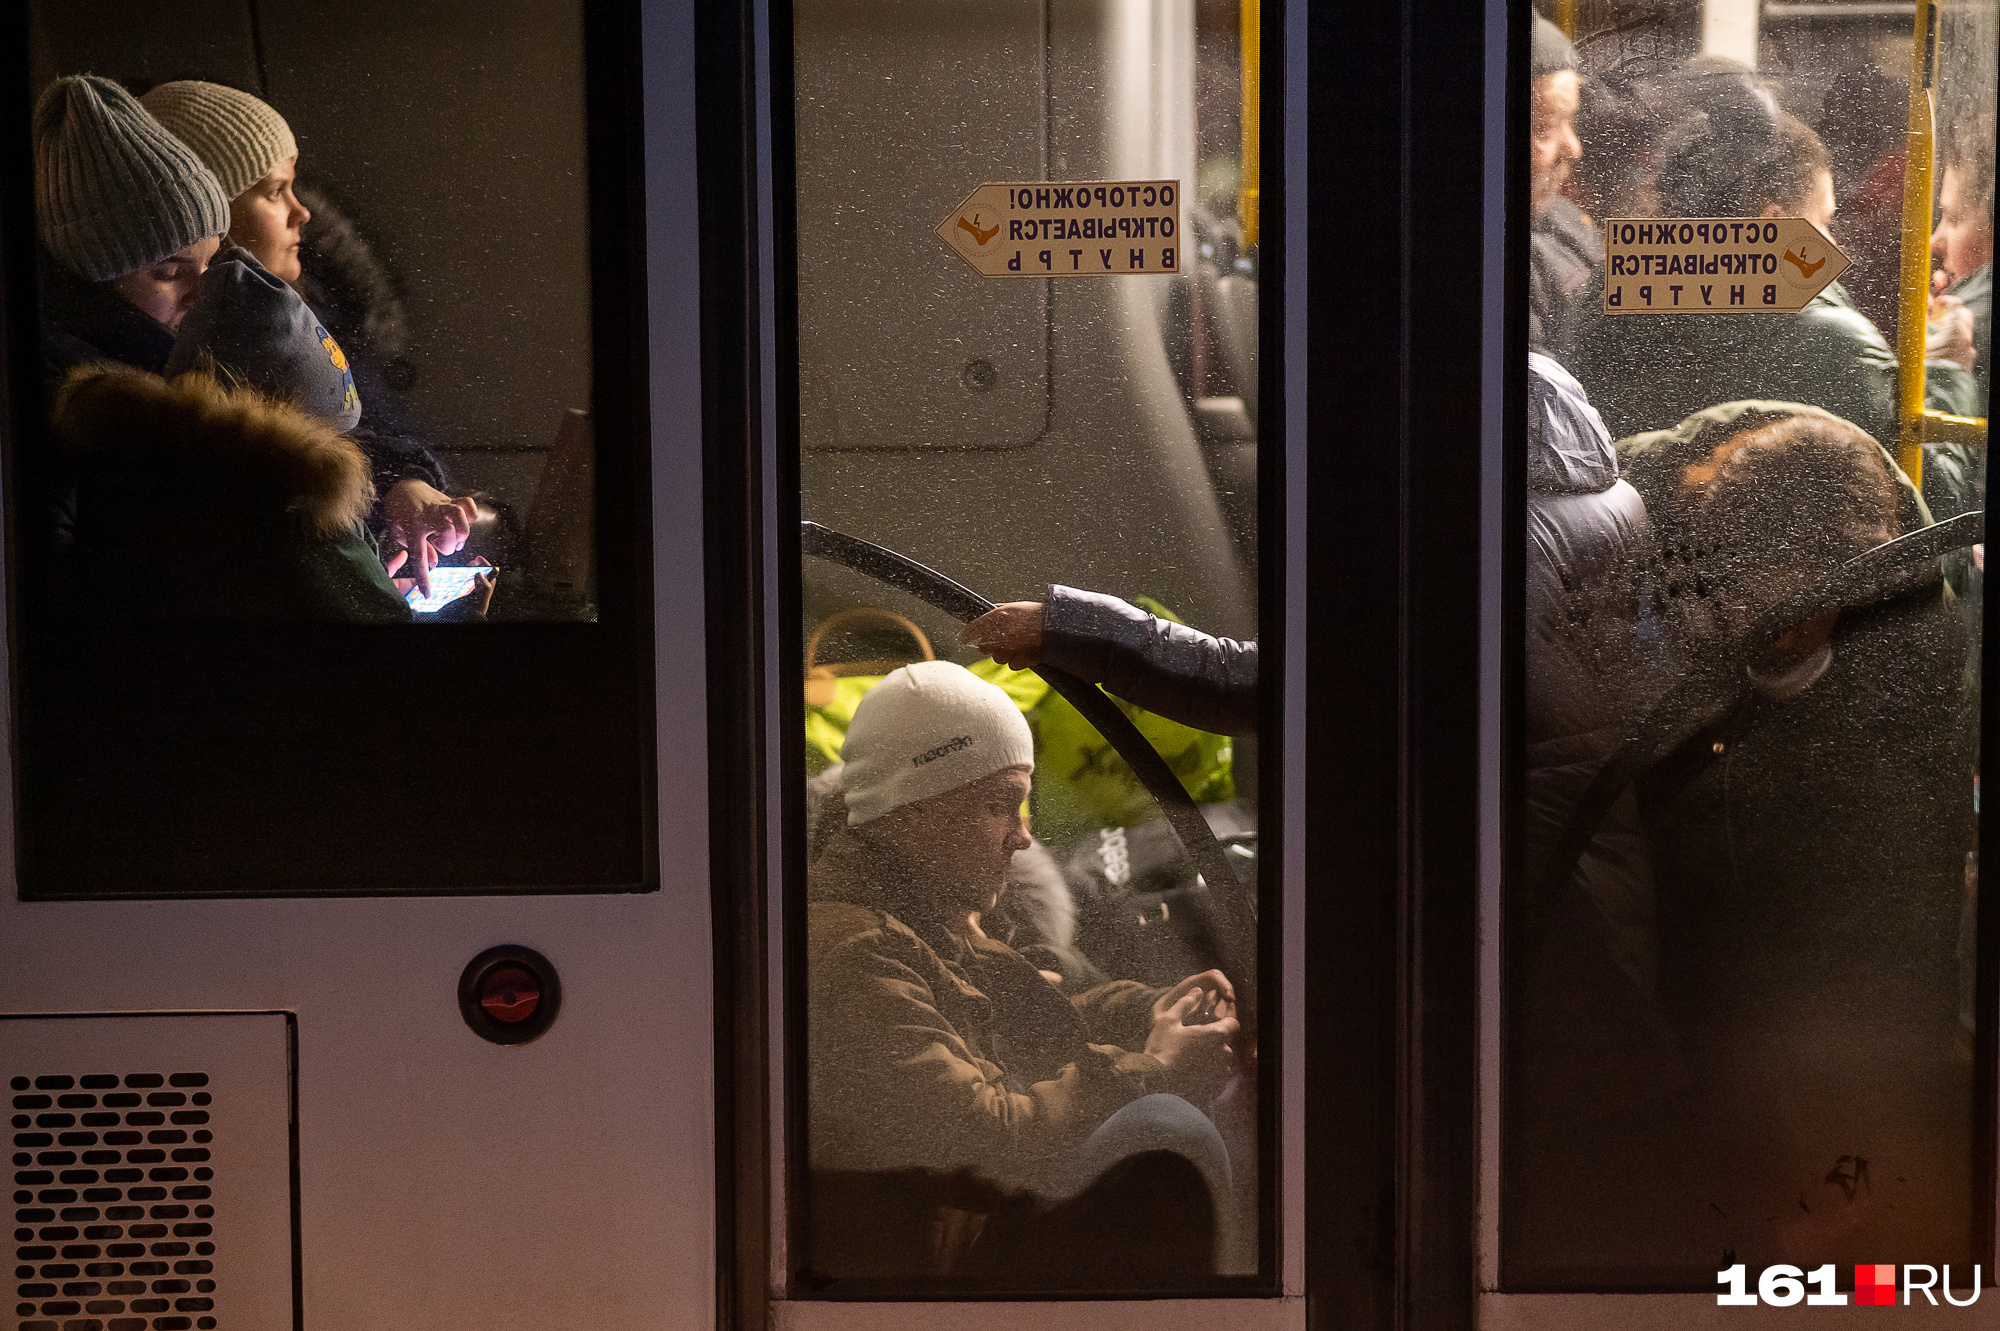 Холодно в 3 степени. Метро экраны. Ситуация в метро. Беженцы фото. Украинские беженцы.